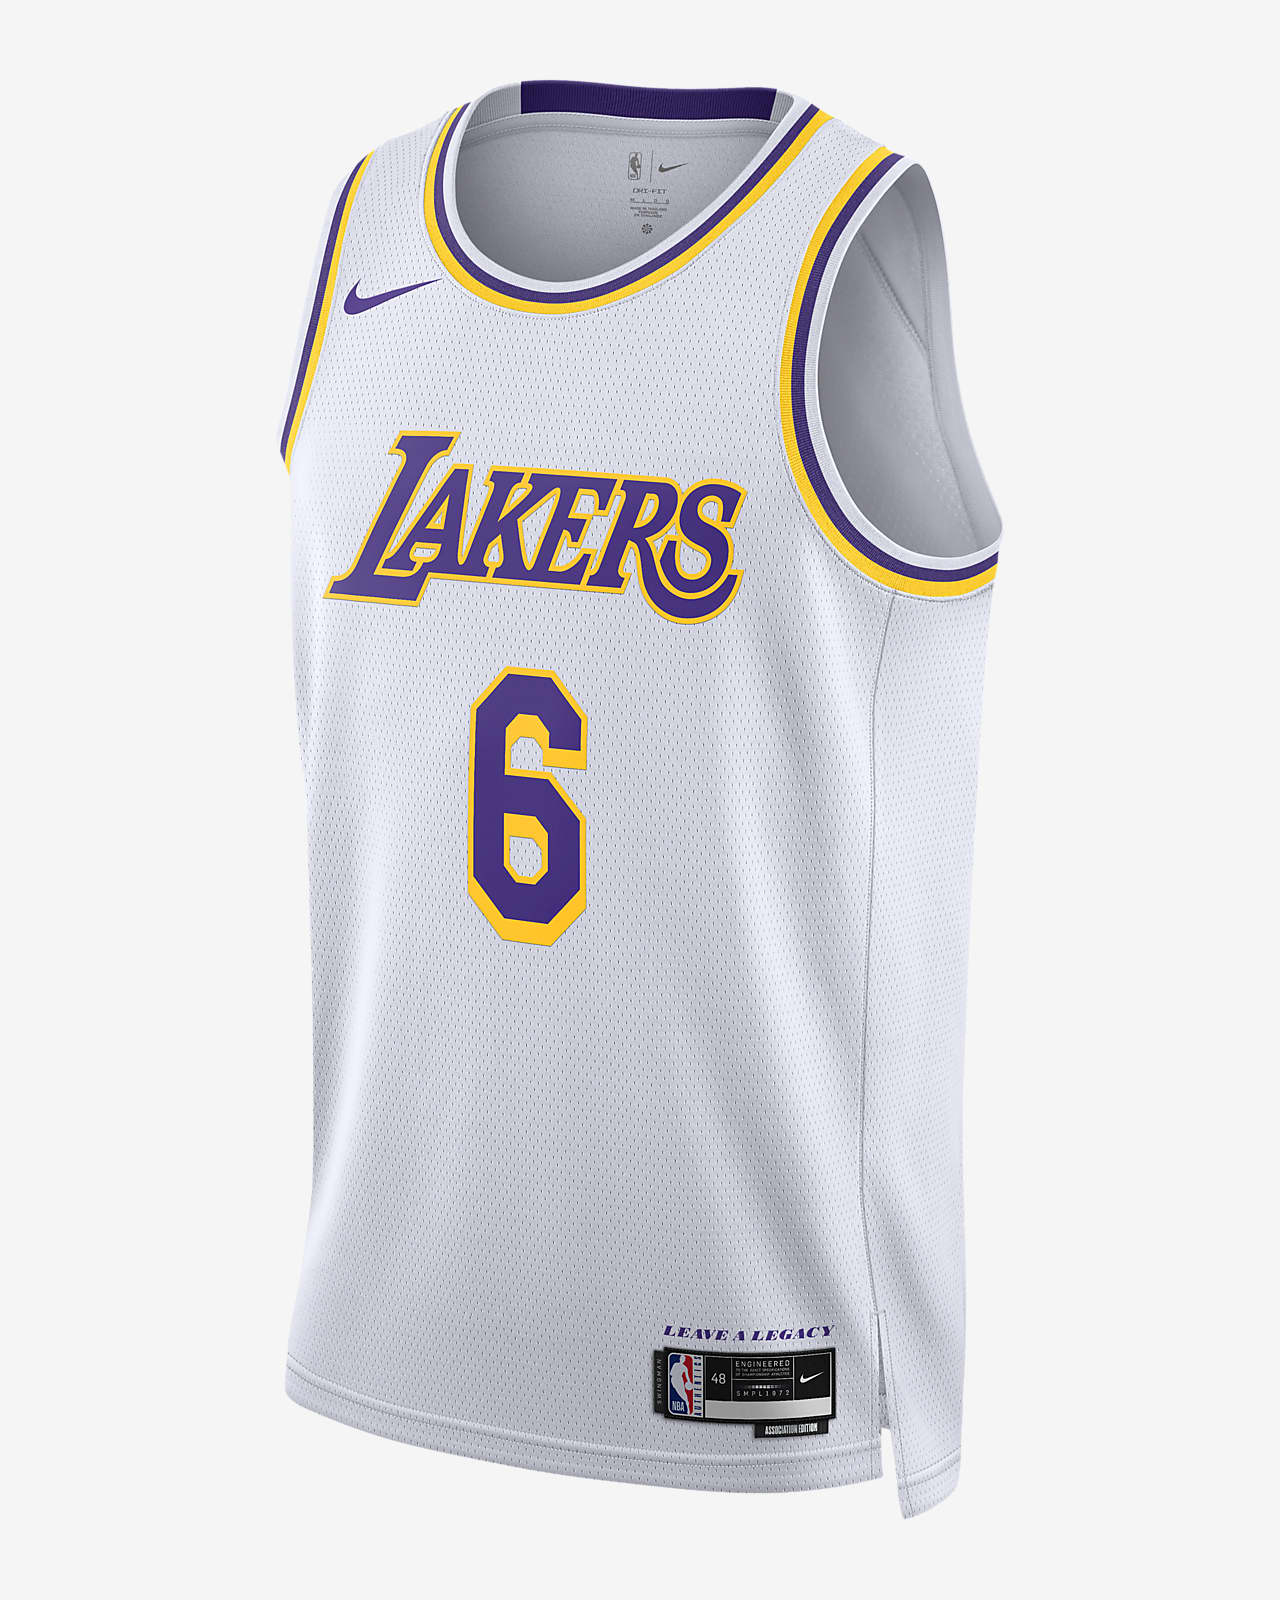 2022/23 赛季洛杉矶湖人队 Association Edition Nike Dri-FIT NBA Swingman Jersey 男子速干球衣